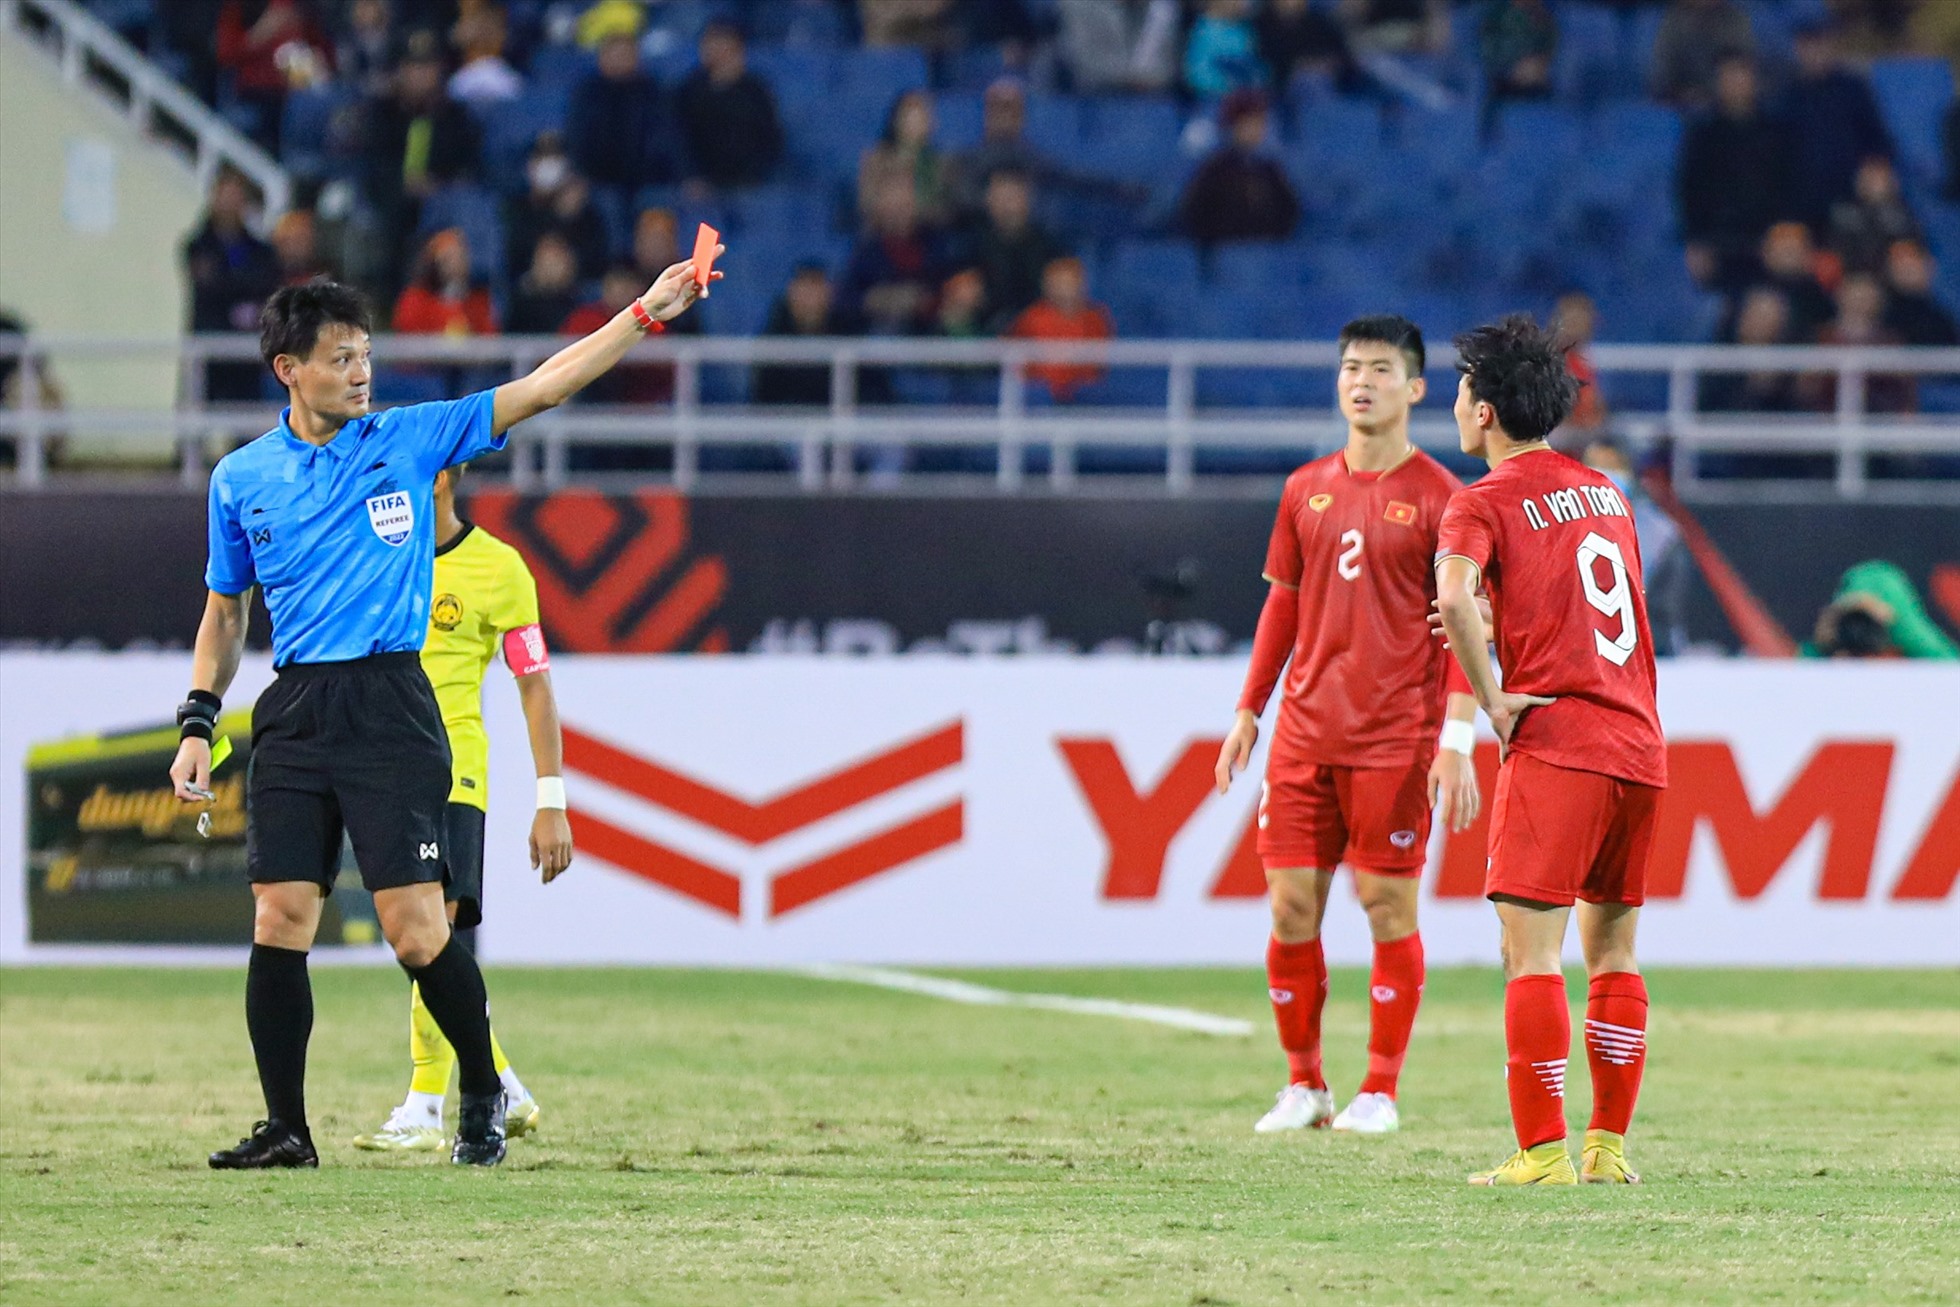 Tuy nhiên, niềm vui chưa được bao lâu, đội tuyển Việt Nam đã phải thi đấu thiếu người. Văn Toàn nhận thẻ vàng thứ hai rời sân ngay từ phút 32.